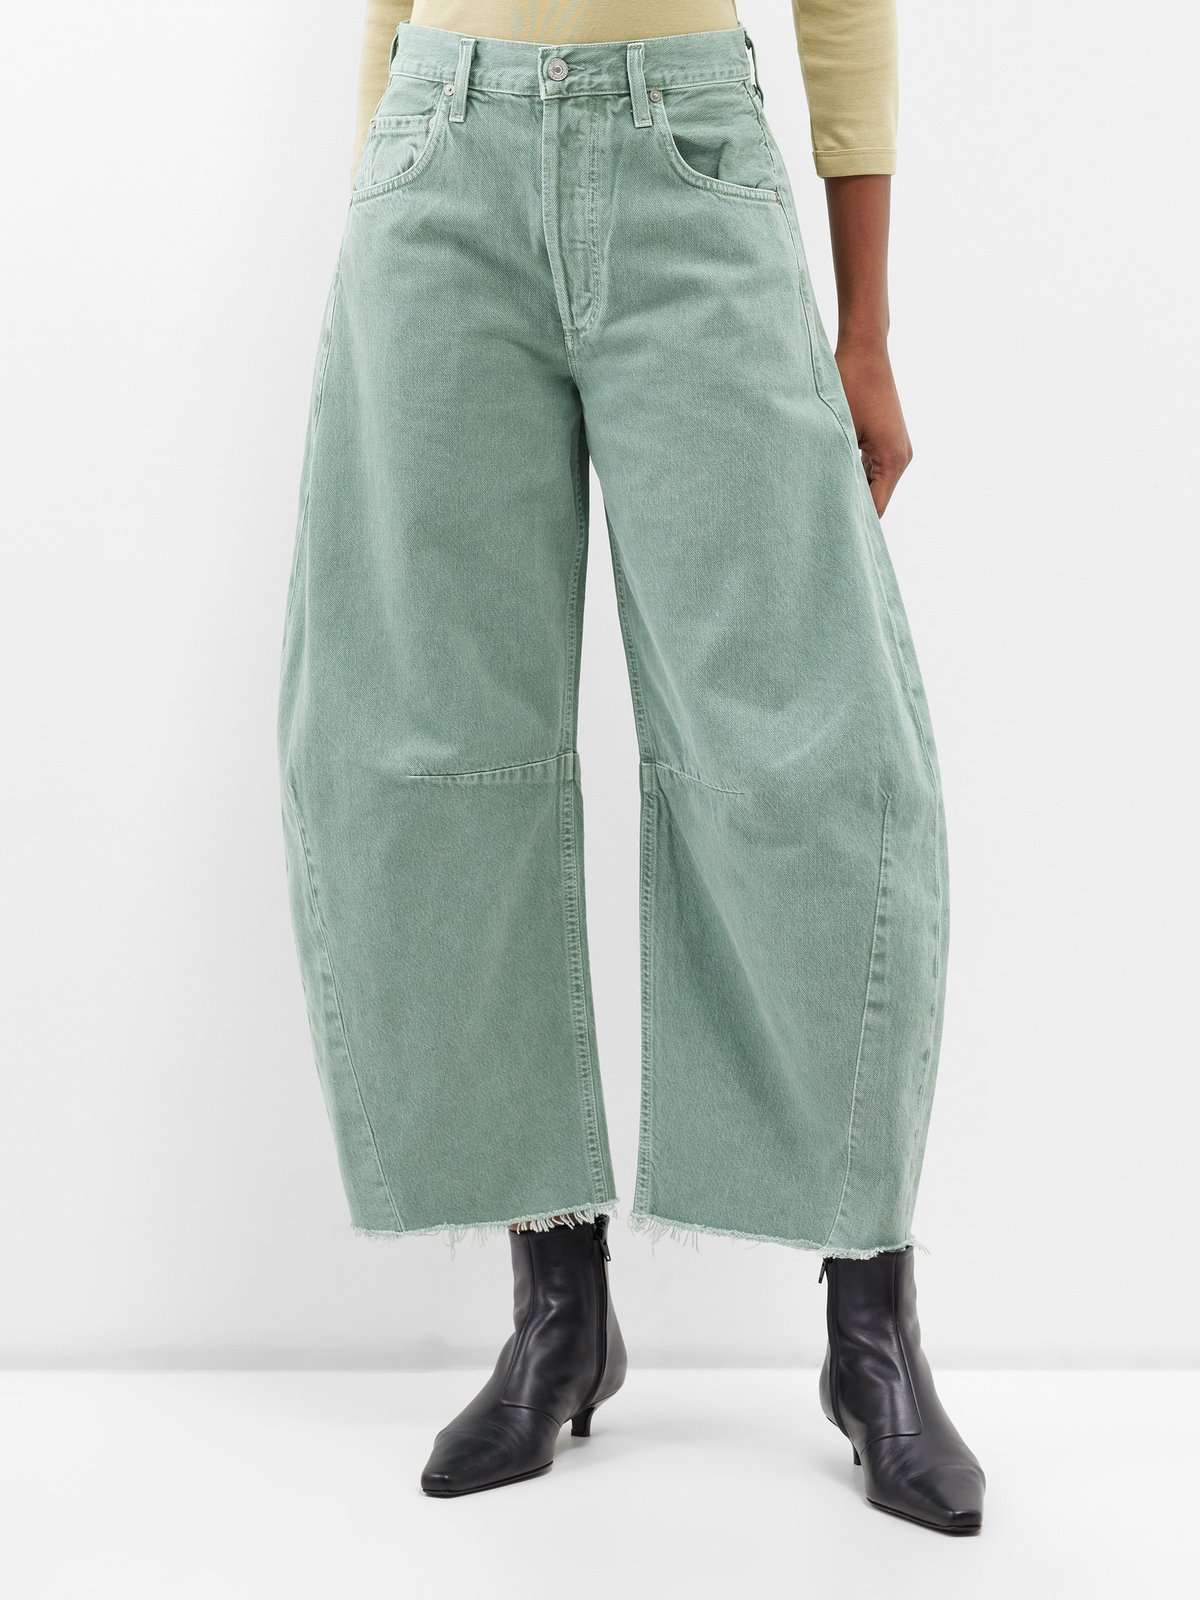 джинсы с необработанным краем и изогнутыми штанинами в форме подковы